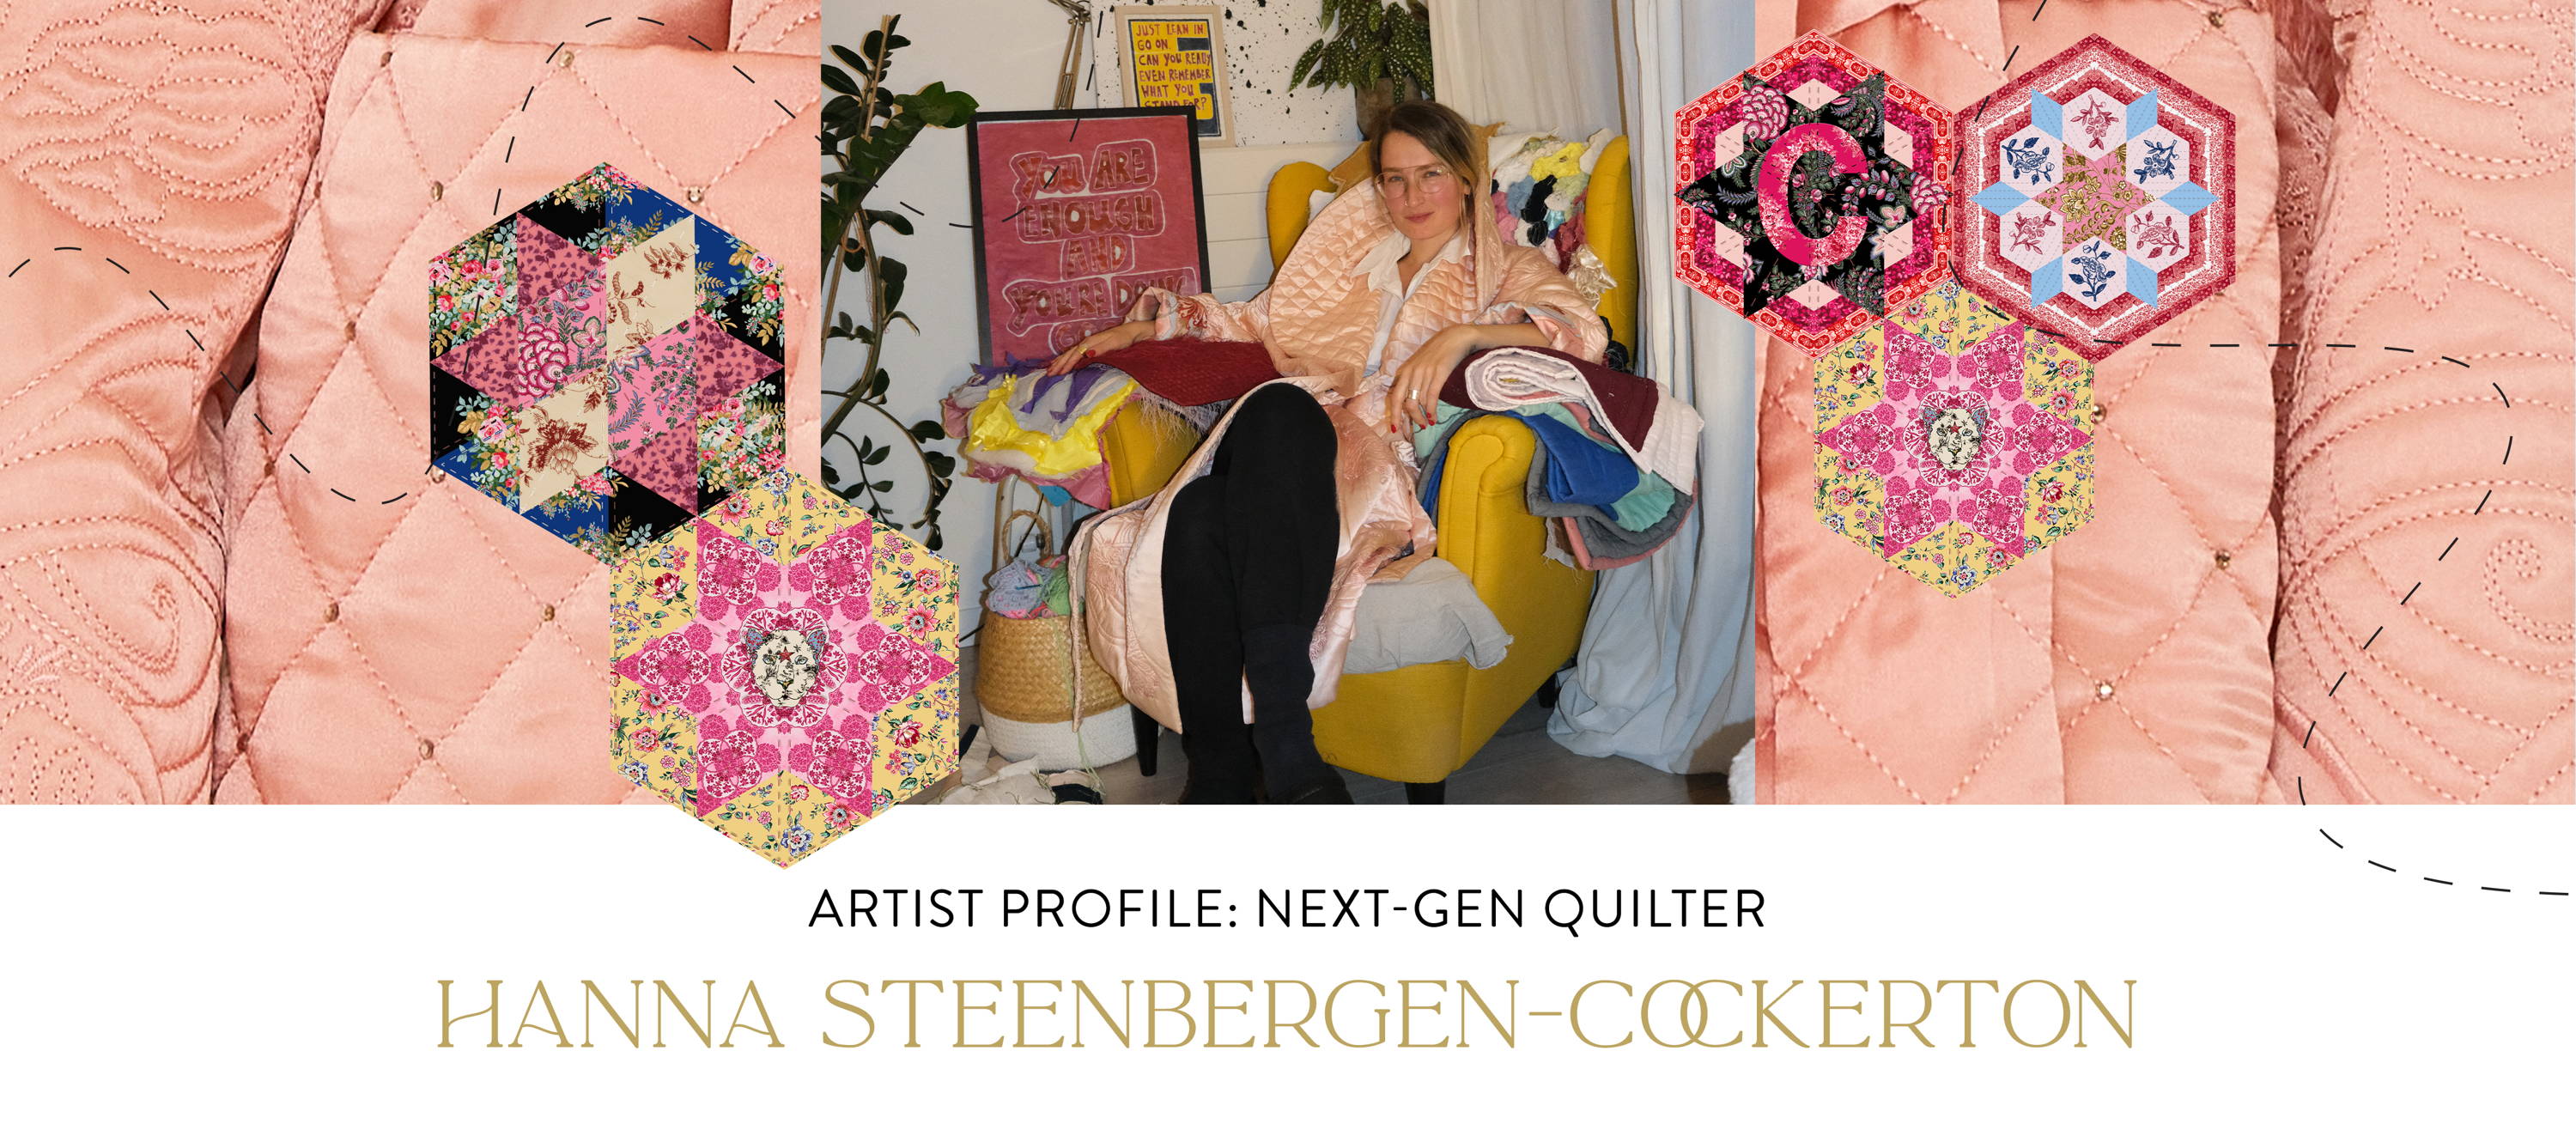 ARTIST PROFILE: NEXT-GEN QUILTER HANNA STEENBERGEN-COCKERTON